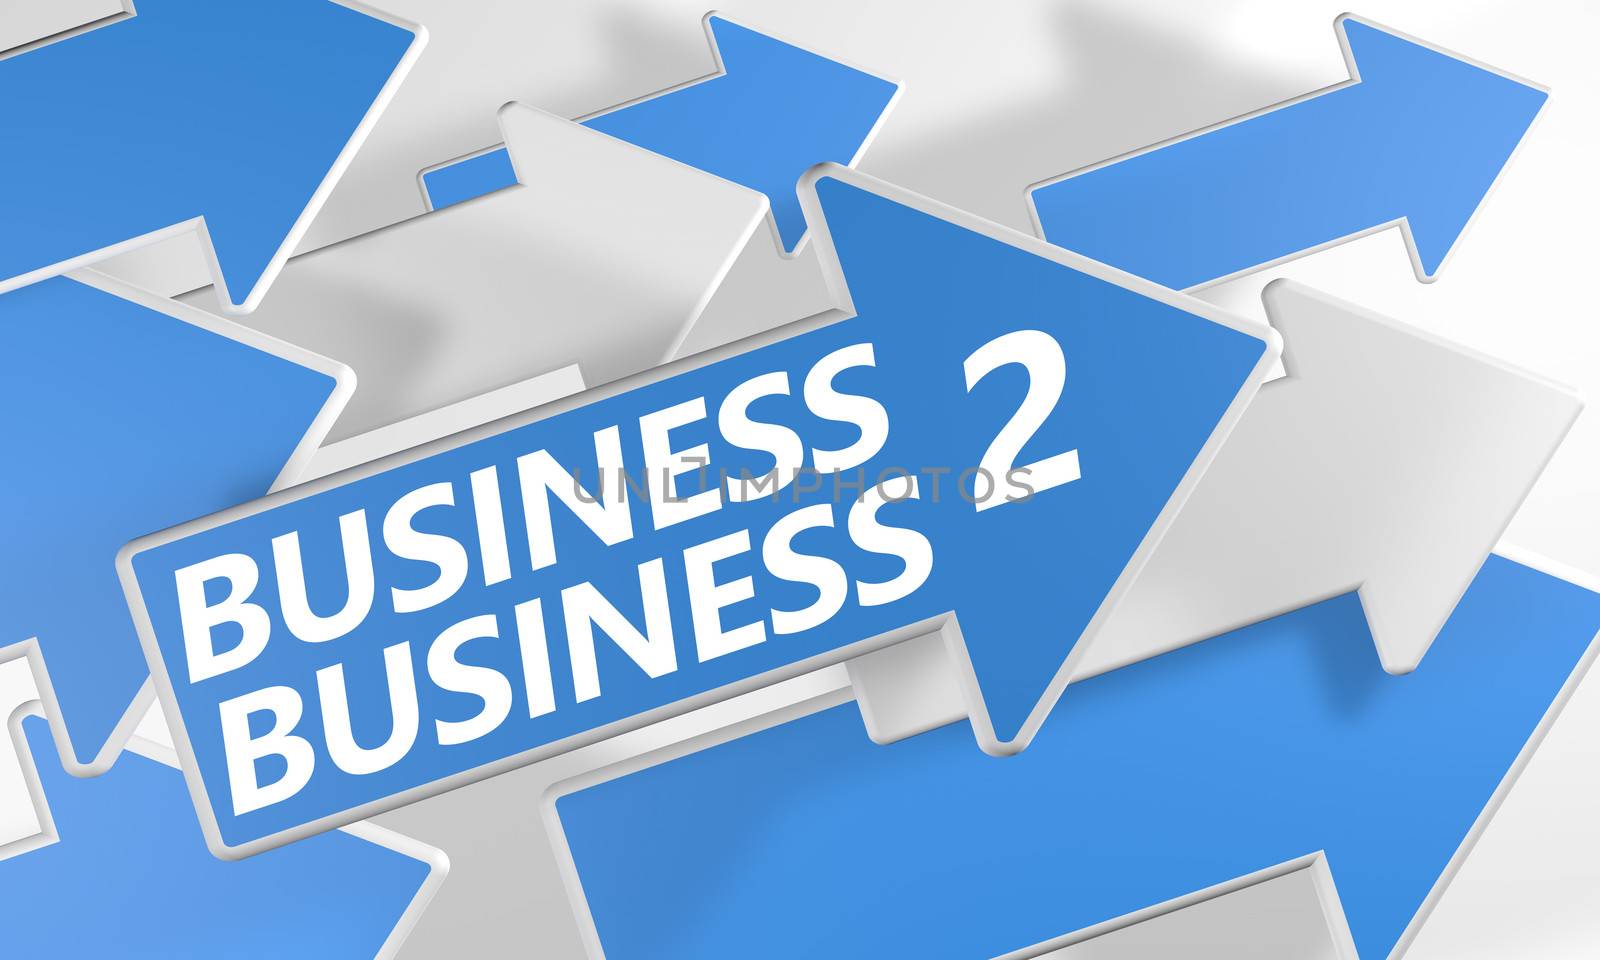 Business 2 Business by Mazirama